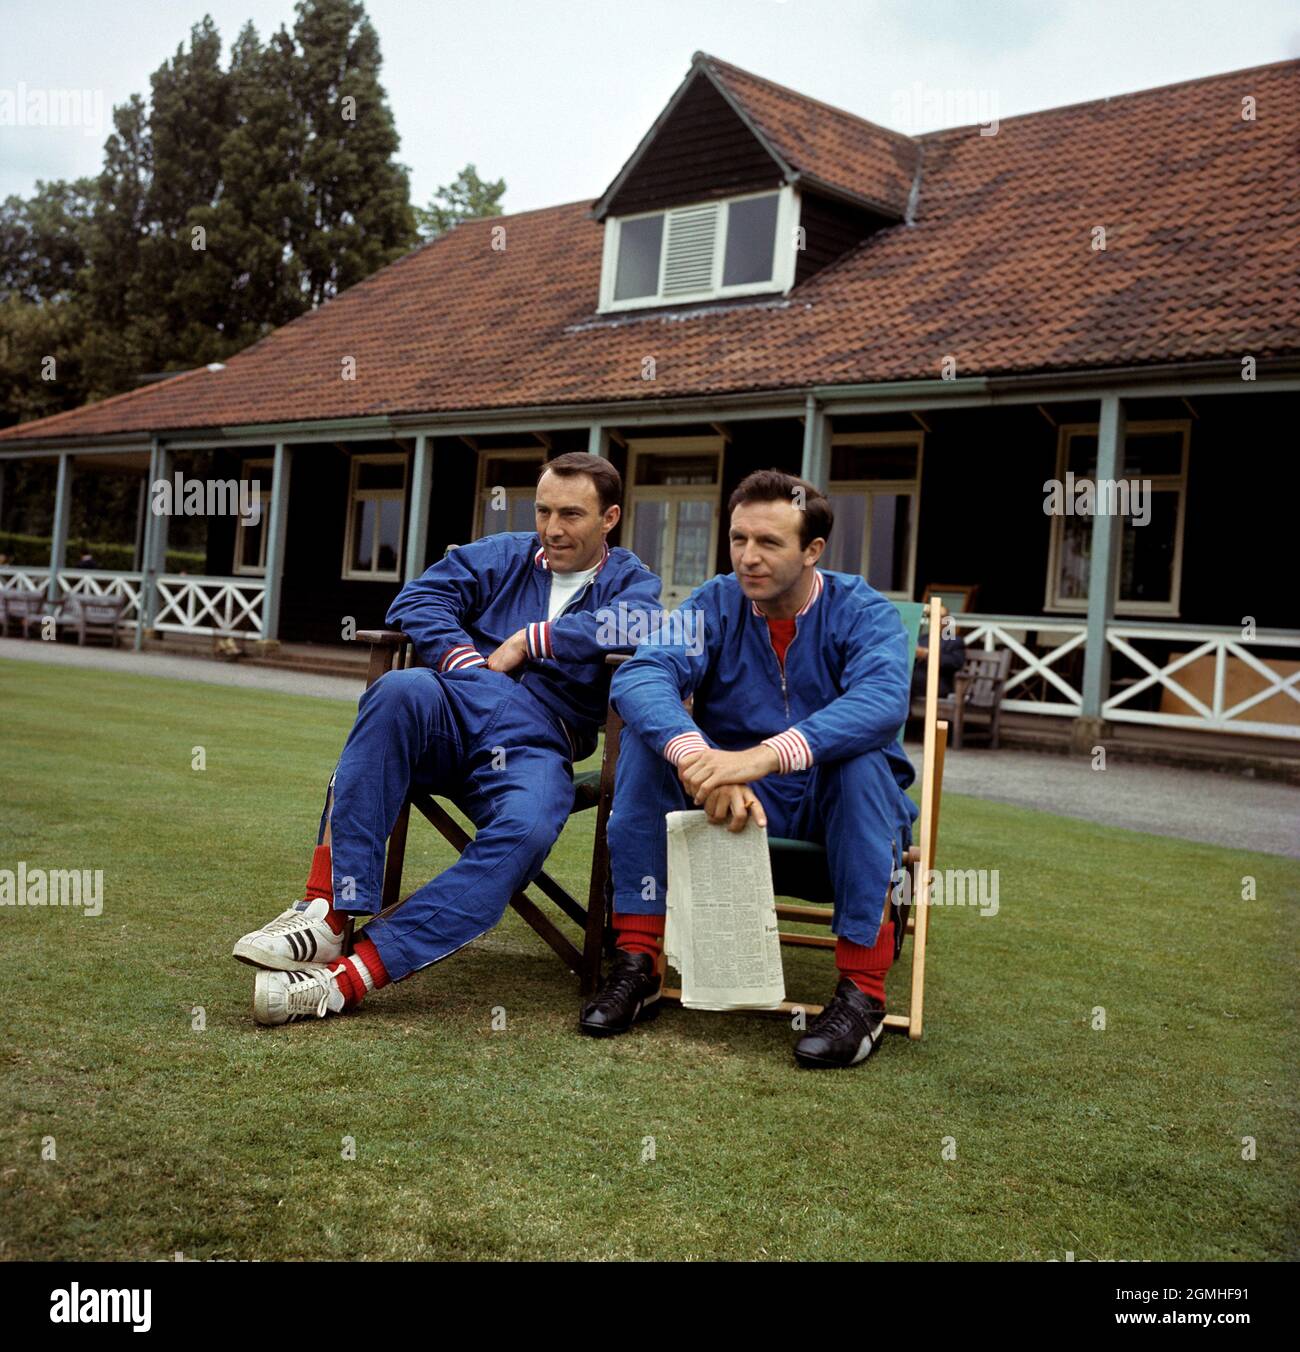 Foto del archivo fechada el 15-07-1966 de Jimmy Greaves y Jimmy Armfield de Inglaterra Let it Easy durante una sesión de entrenamiento en Roehampton Fecha de emisión: Domingo 19 de septiembre de 2021. Foto de stock